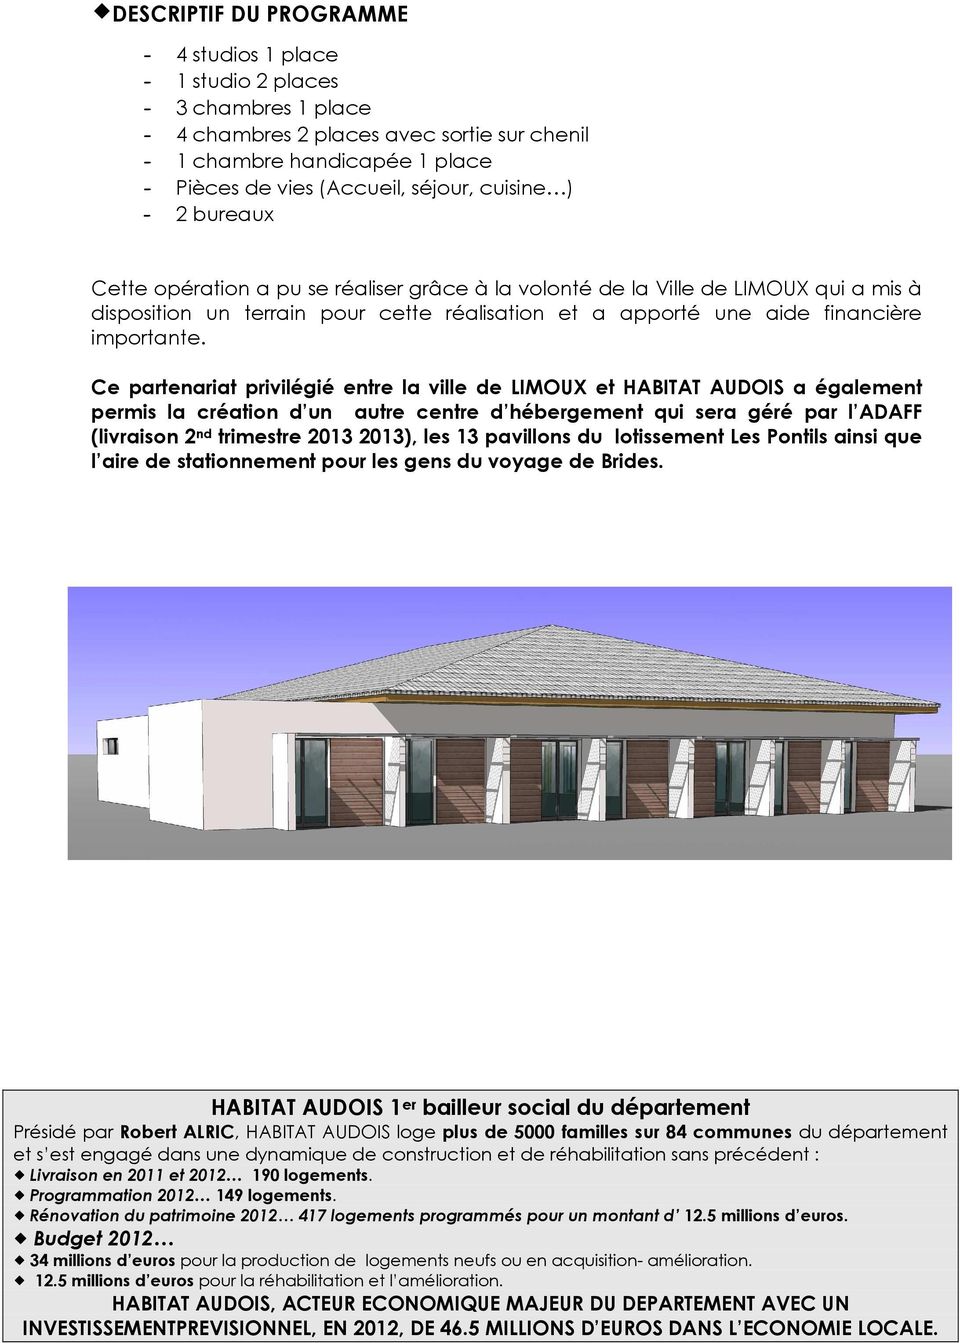 Ce partenariat privilégié entre la ville de LIMOUX et HABITAT AUDOIS a également permis la création d un autre centre d hébergement qui sera géré par l ADAFF (livraison 2 nd trimestre 2013 2013), les